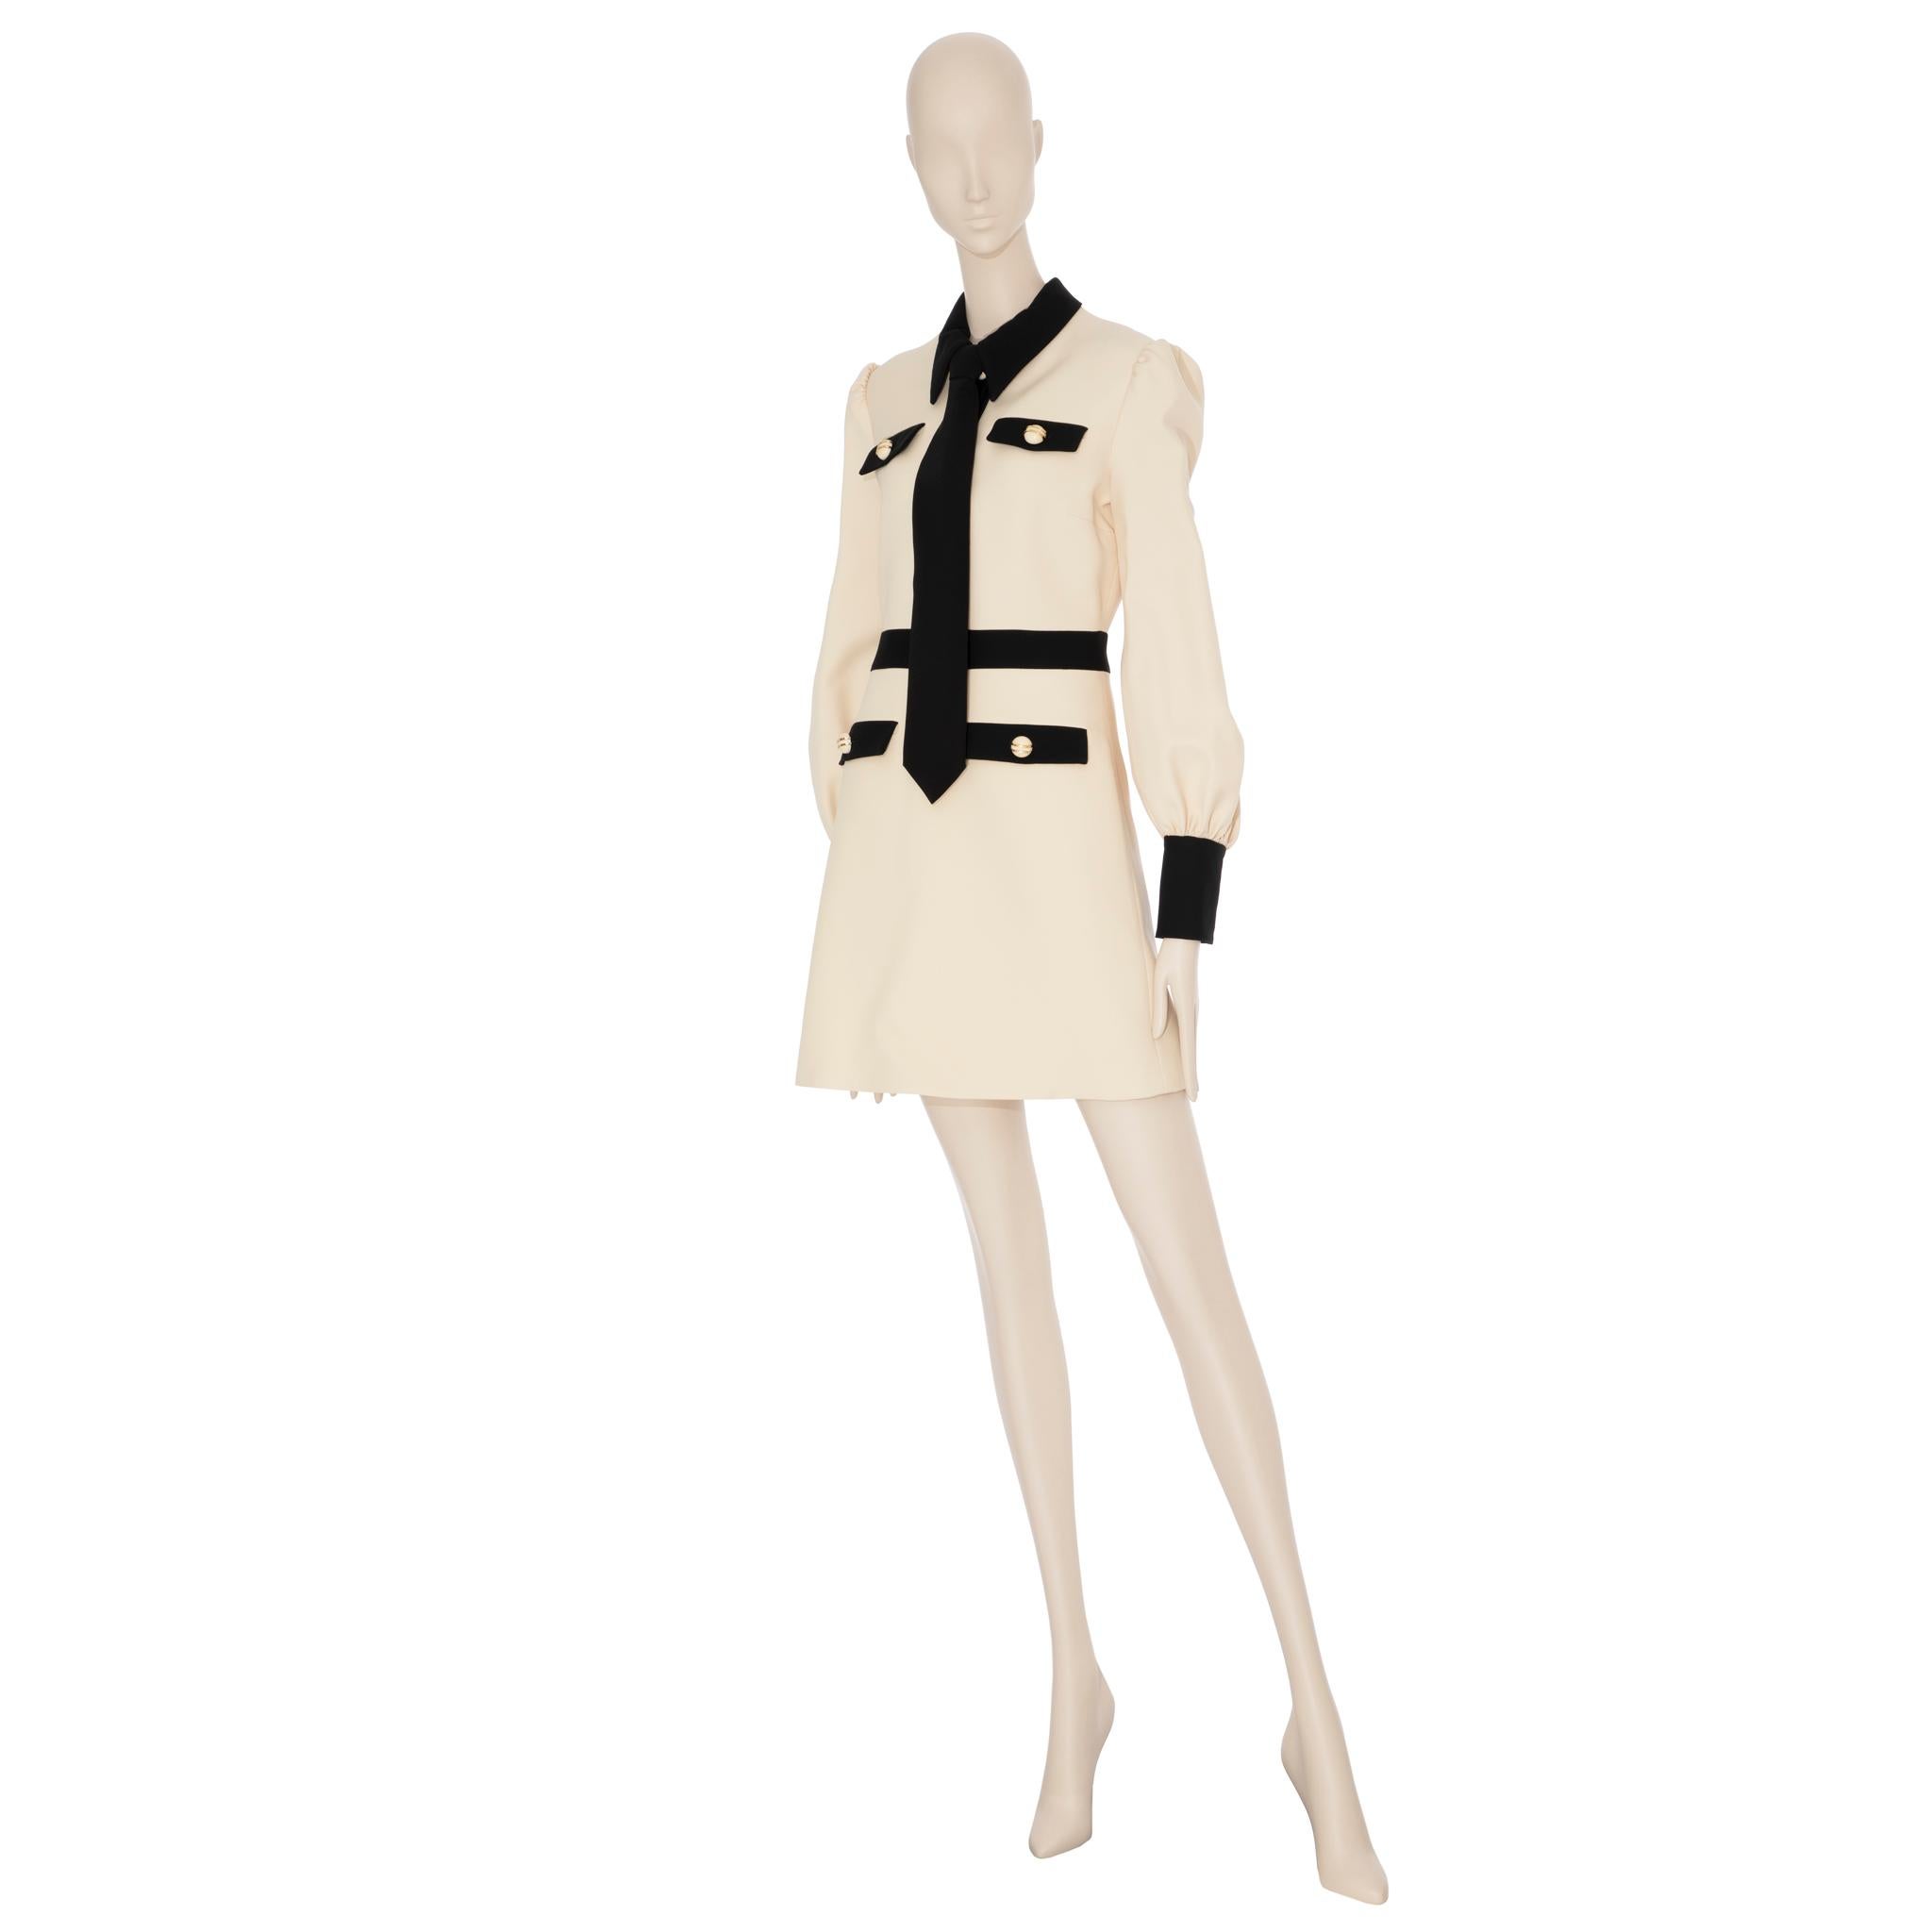 Women's Gucci Long Sleeve Dress With Tie Ivory & Black Wool & Silk 40 IT